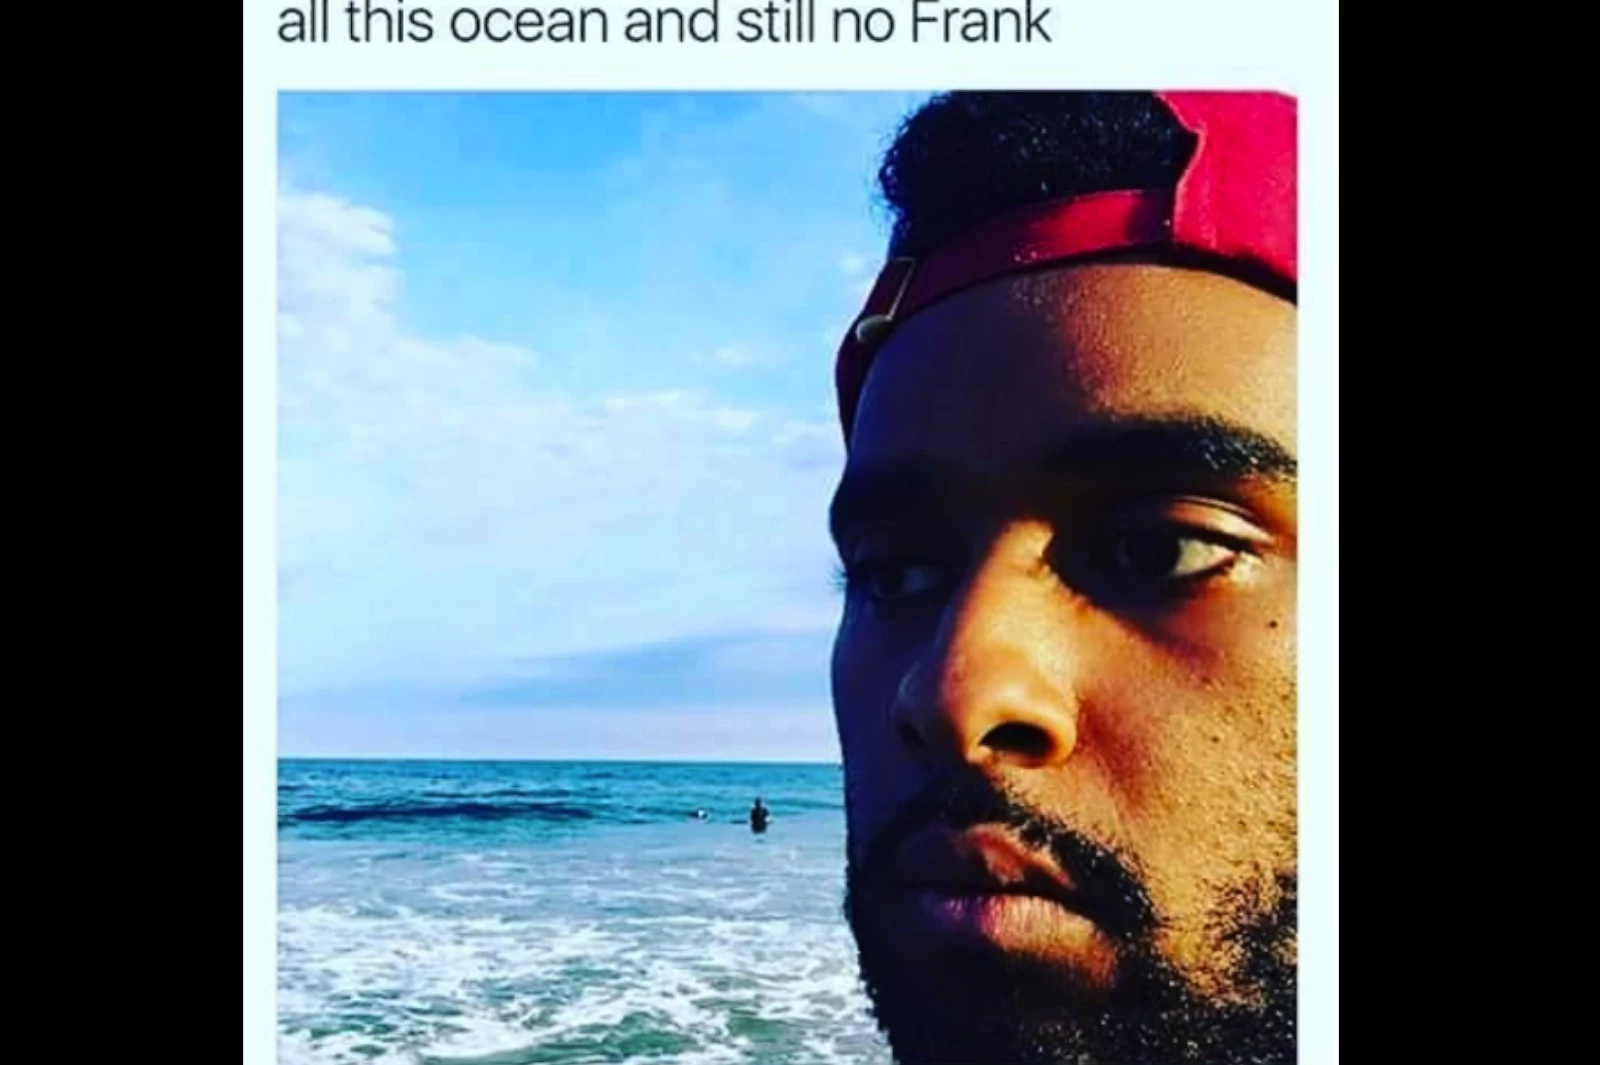 tyler the creator meme frank ocean